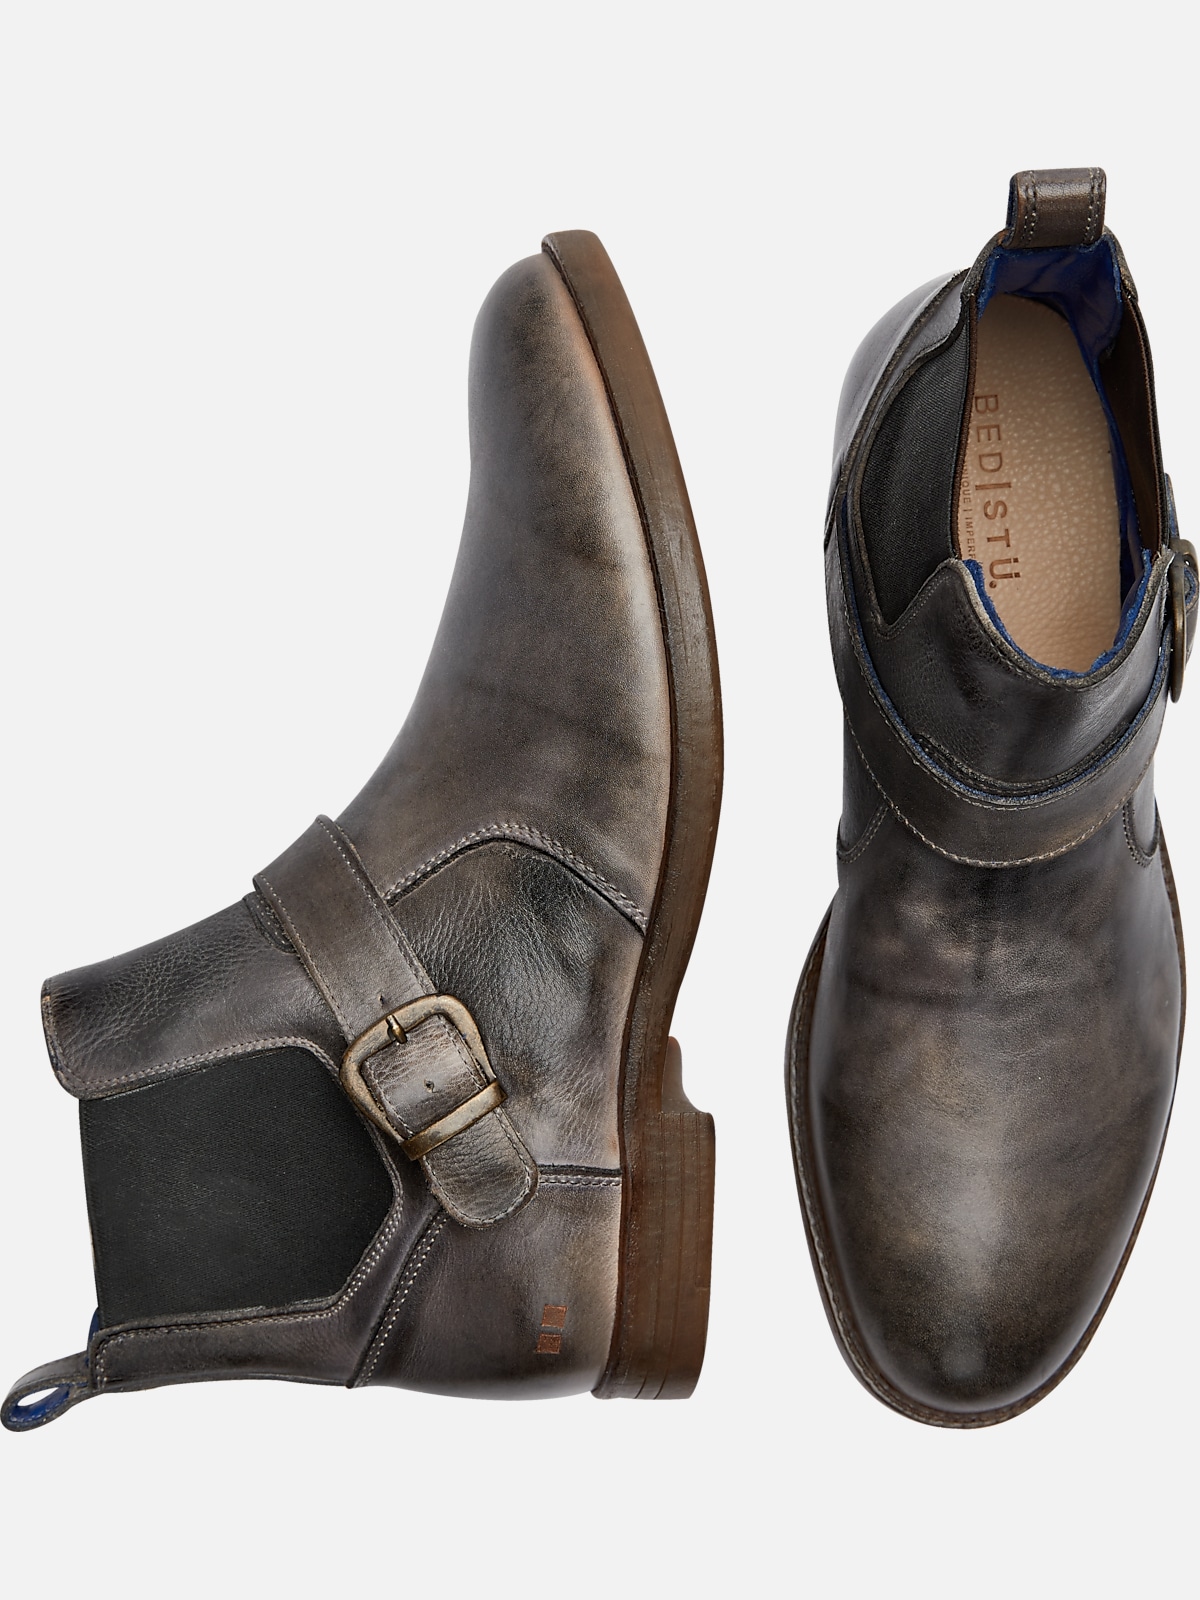 kedel Fil vægt Bedstu Michelangelo Plain Toe Chelsea Boots | All Shoes| Men's Wearhouse